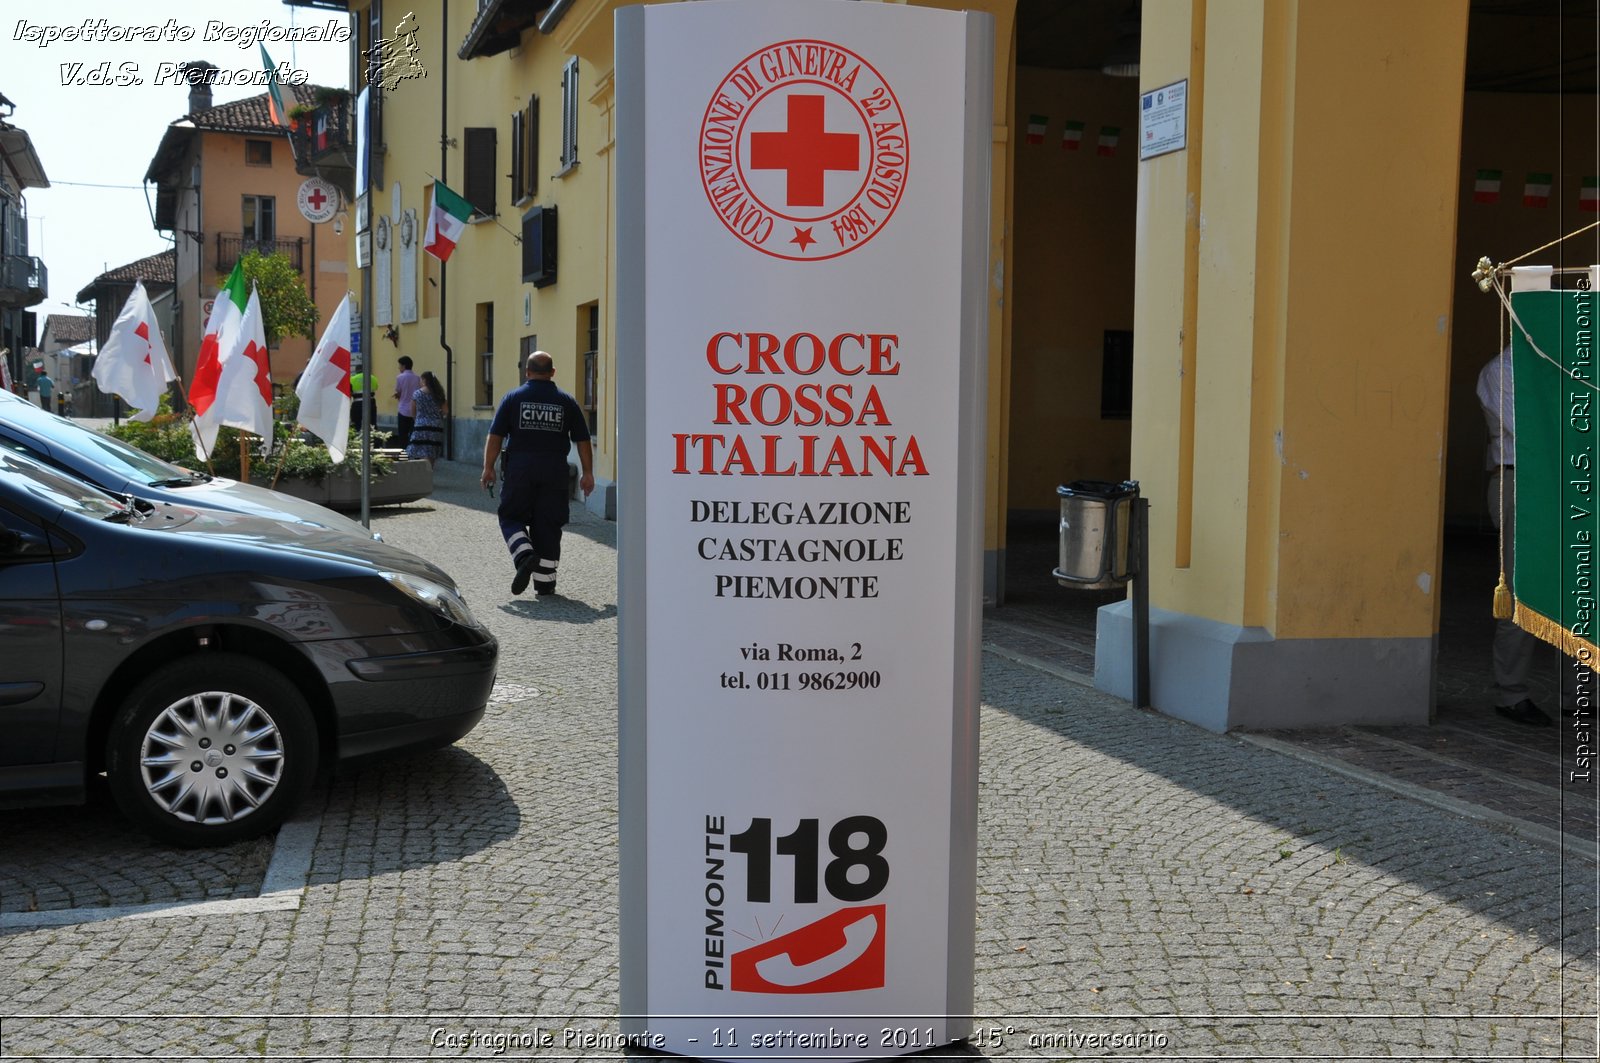 Castagnole Piemonte  - 11 settembre 2011 - 15 anniversario -  Croce Rossa Italiana - Ispettorato Regionale Volontari del Soccorso Piemonte